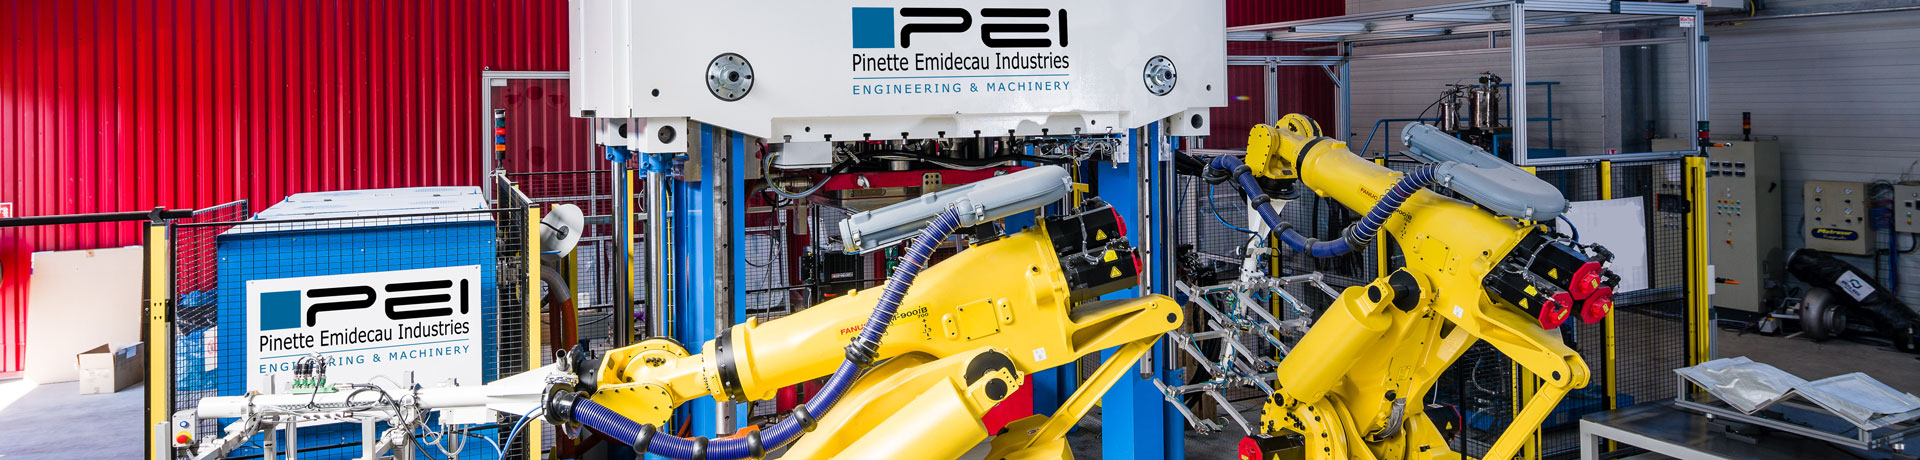 PINETTE PEI est un fournisseur de presses hydrauliques allant de 10 à 100 000 kN et de lignes de production automatisées pour le formage et le préformage des composites